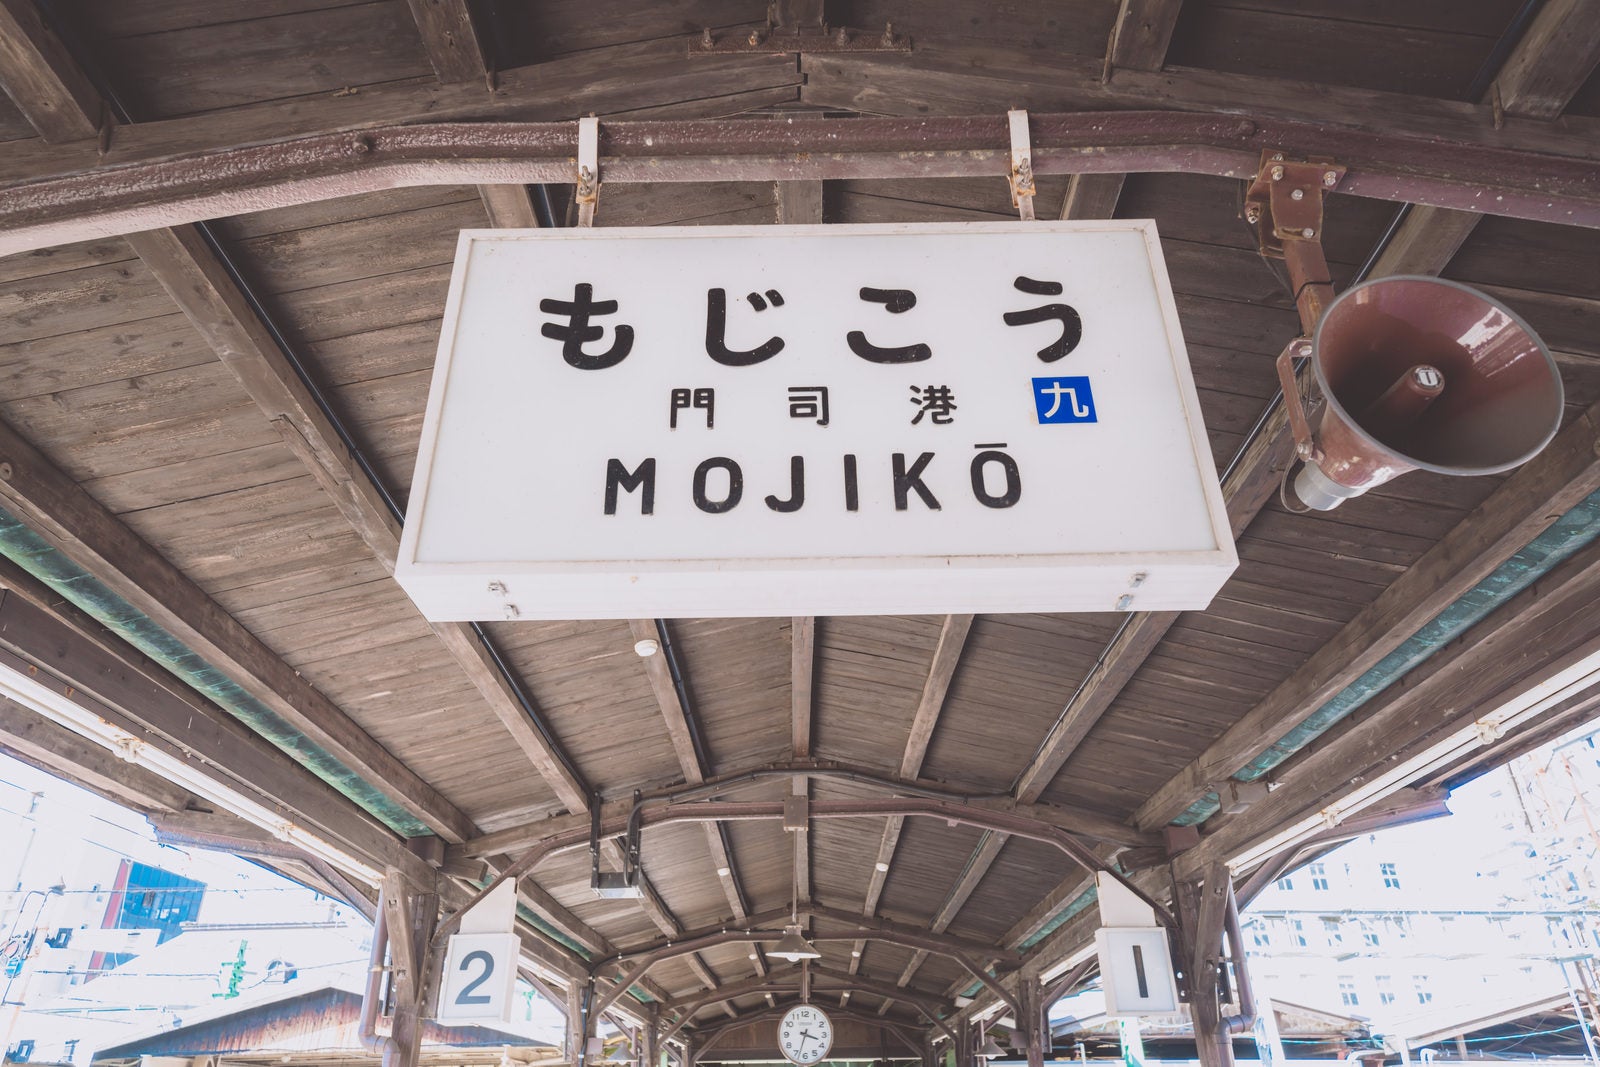 「門司港の旅情感じる駅名標」の写真